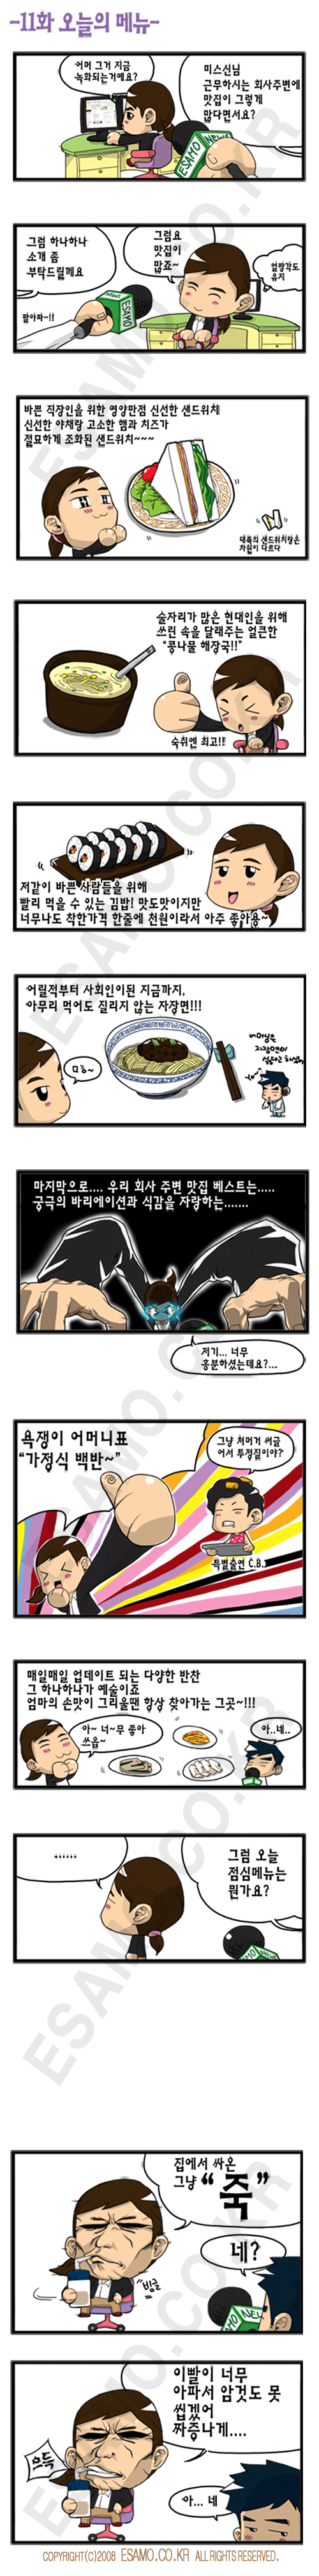 제11화 맛집_워터마크.gif